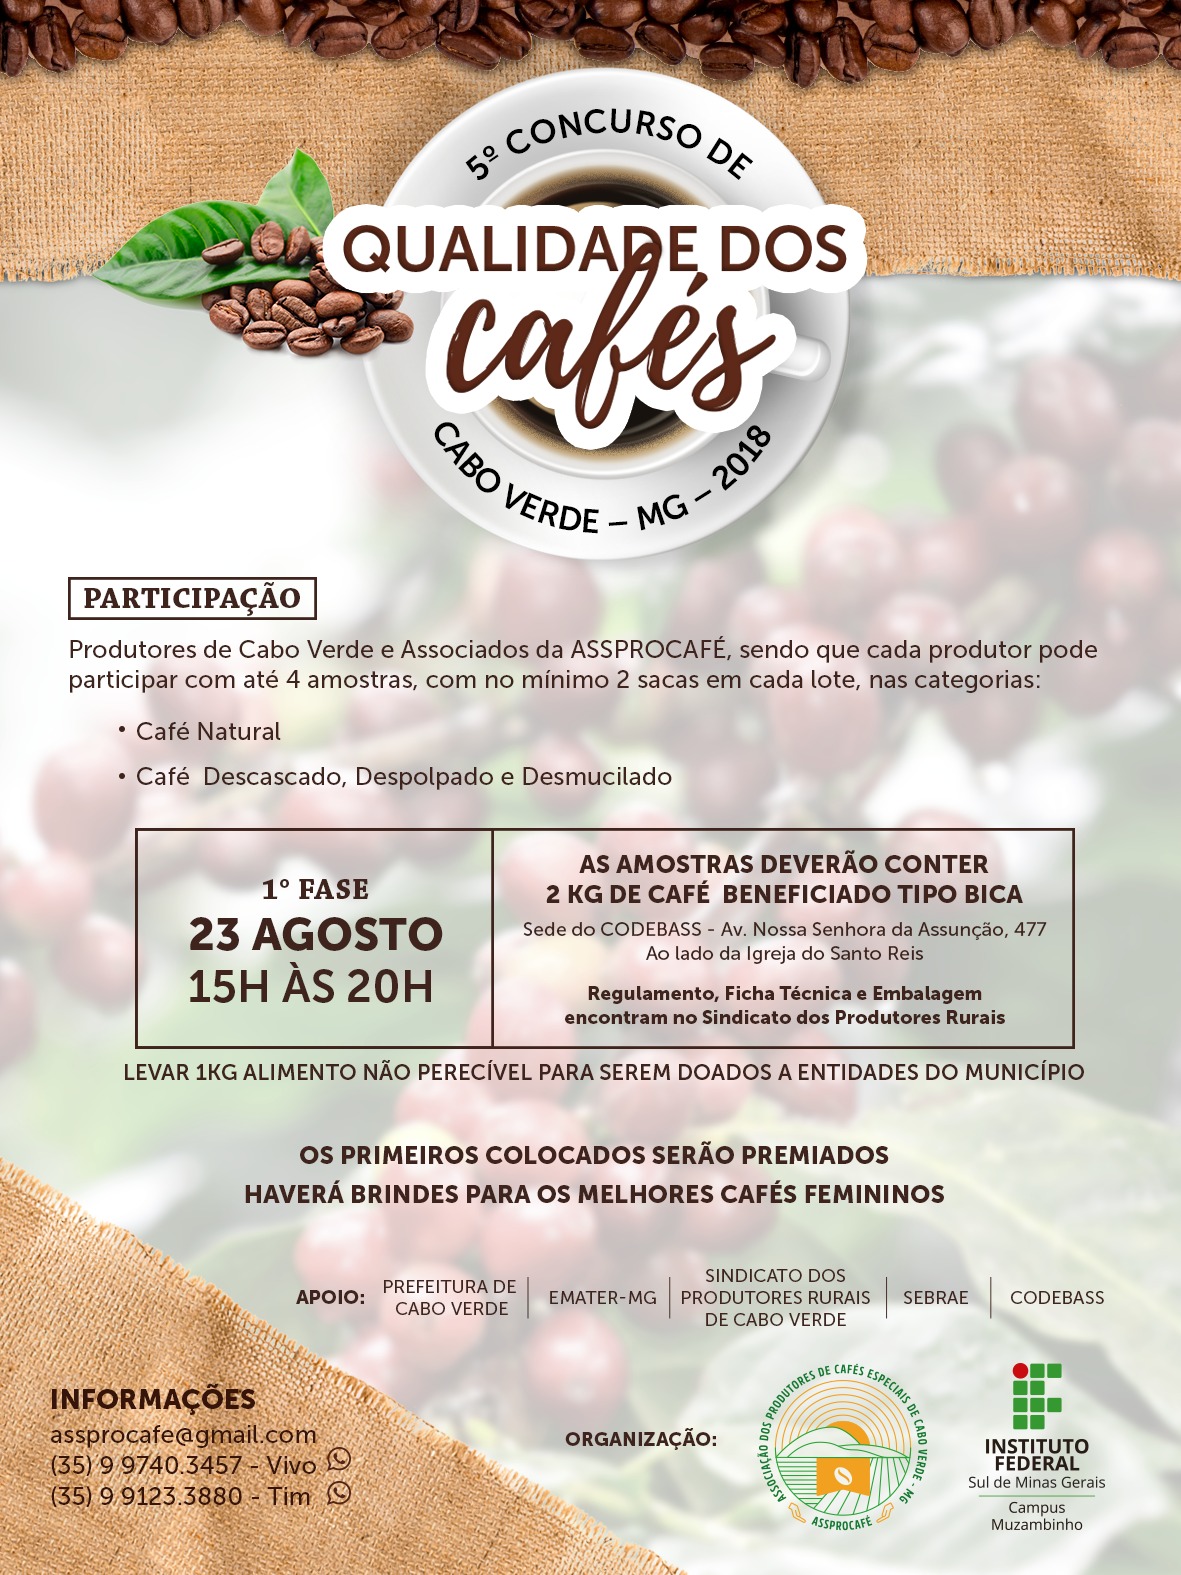 5º Concurso de Qualidade dos Cafés de Cabo Verde (MG)